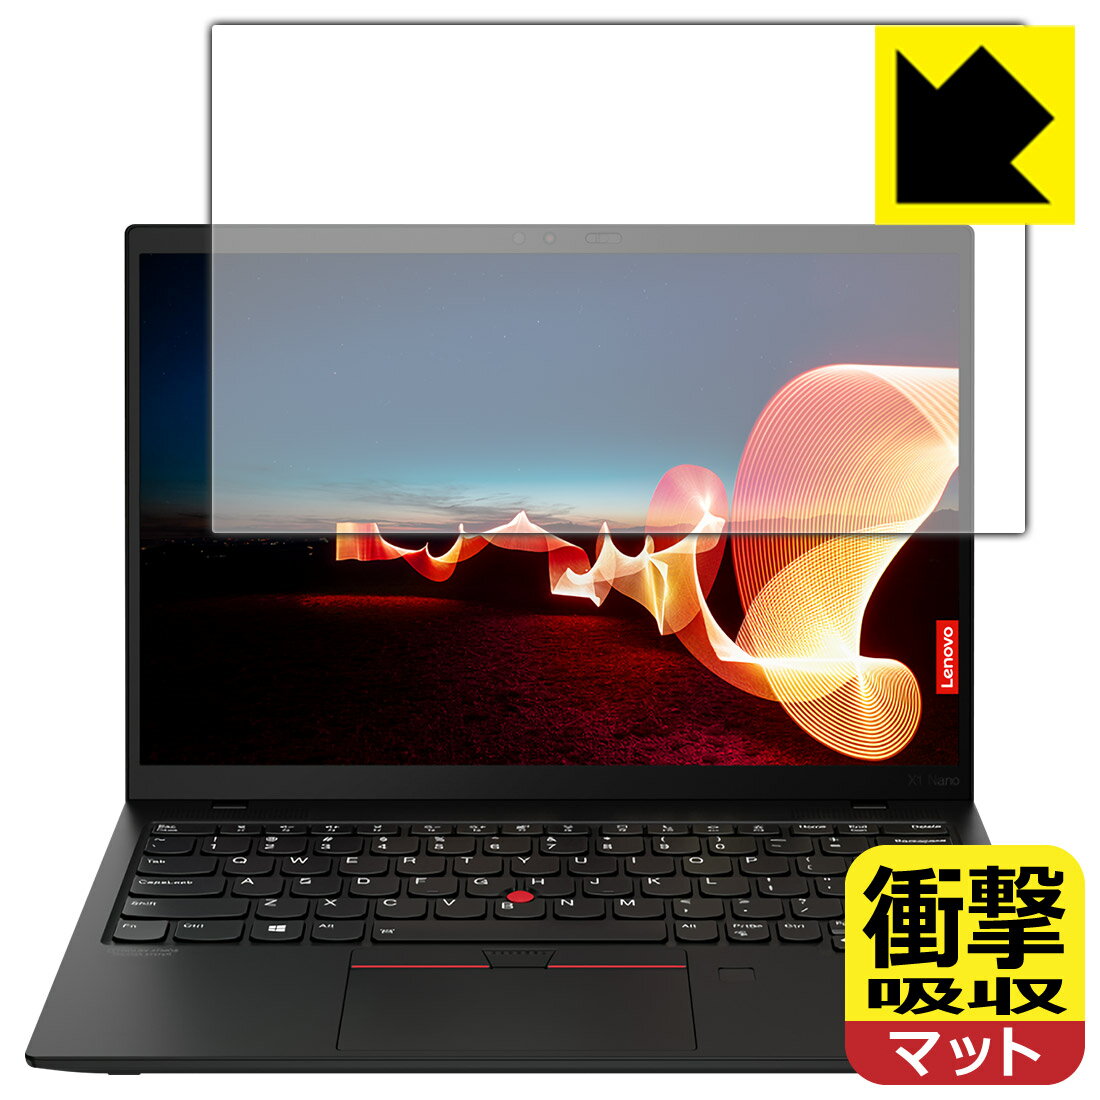 衝撃吸収【反射低減】保護フィルム ThinkPad X1 Nano (Gen 1) 【タッチパネルなしモデル】 日本製 自社製造直販